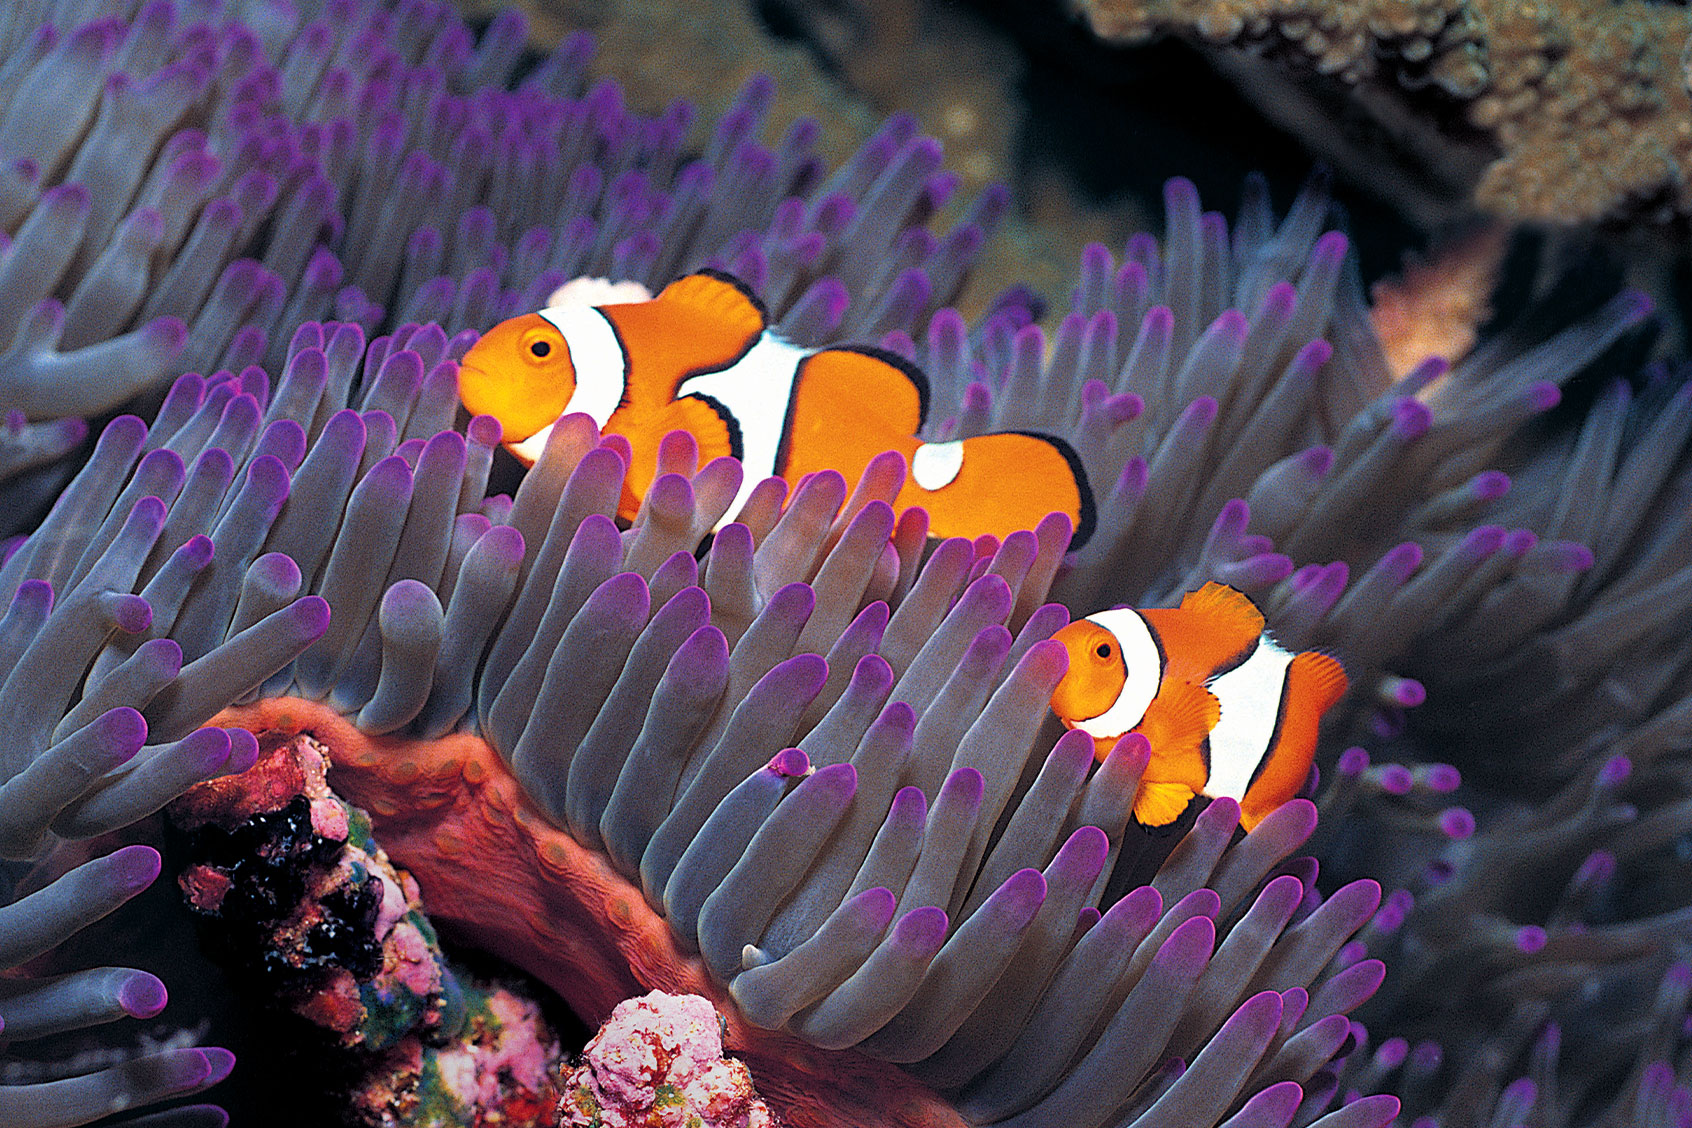 Рыба клоун и актиния. Рыба клоун в актинии. Рыба клоун и актиния симбиоз. Рыба клоун и морские анемоны мутуализм. Рыба клоун и анемон